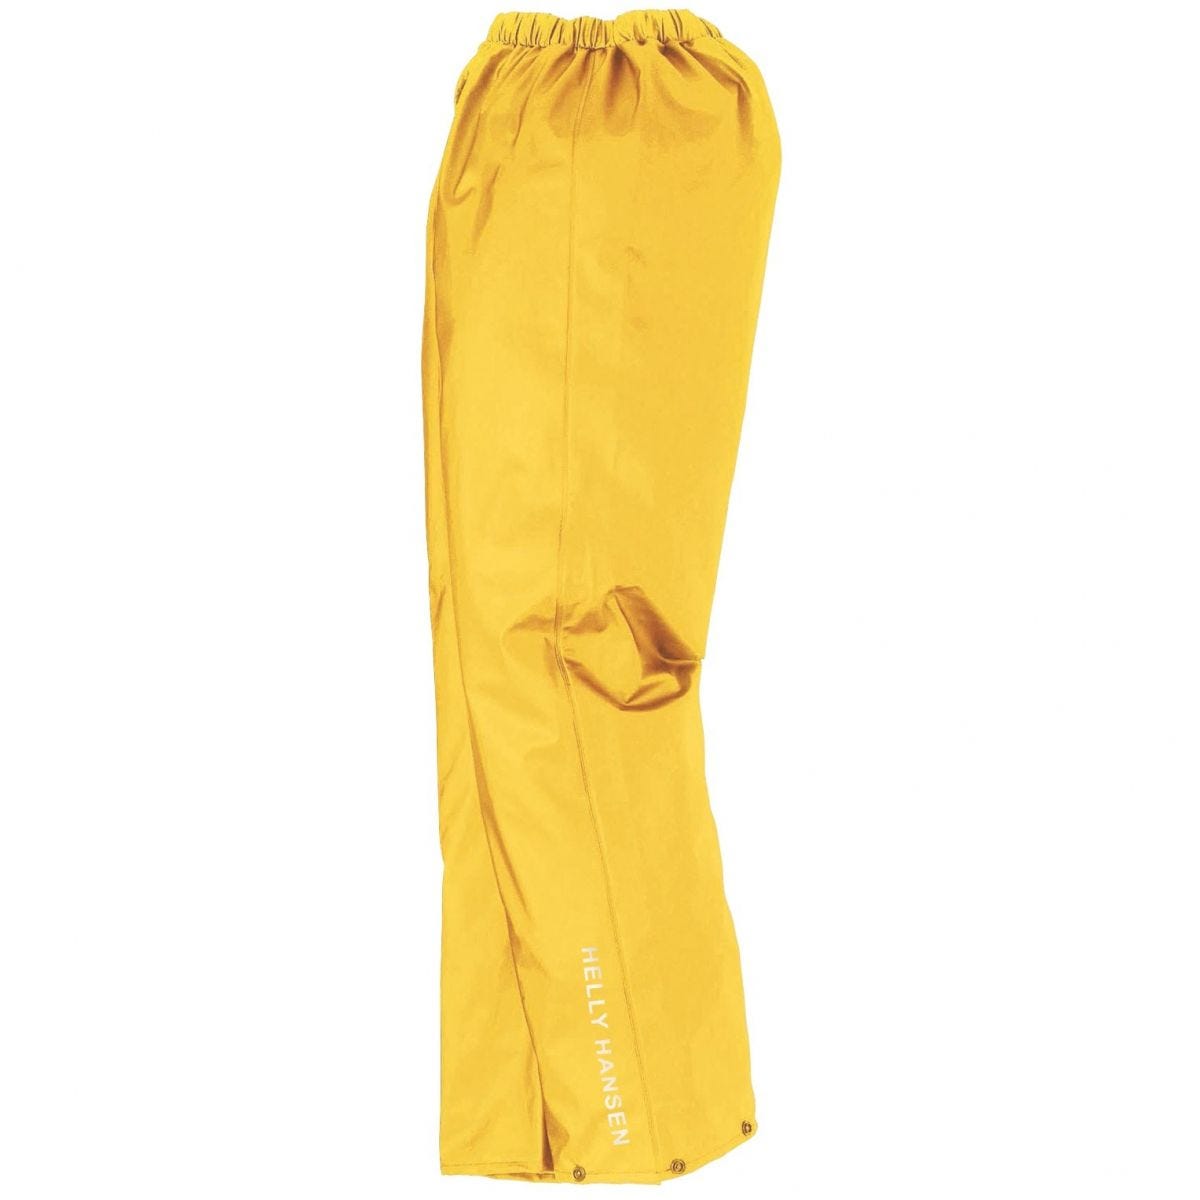 Pantalon de pluie imperméable Voss jaune - Helly Hansen - Taille S 0